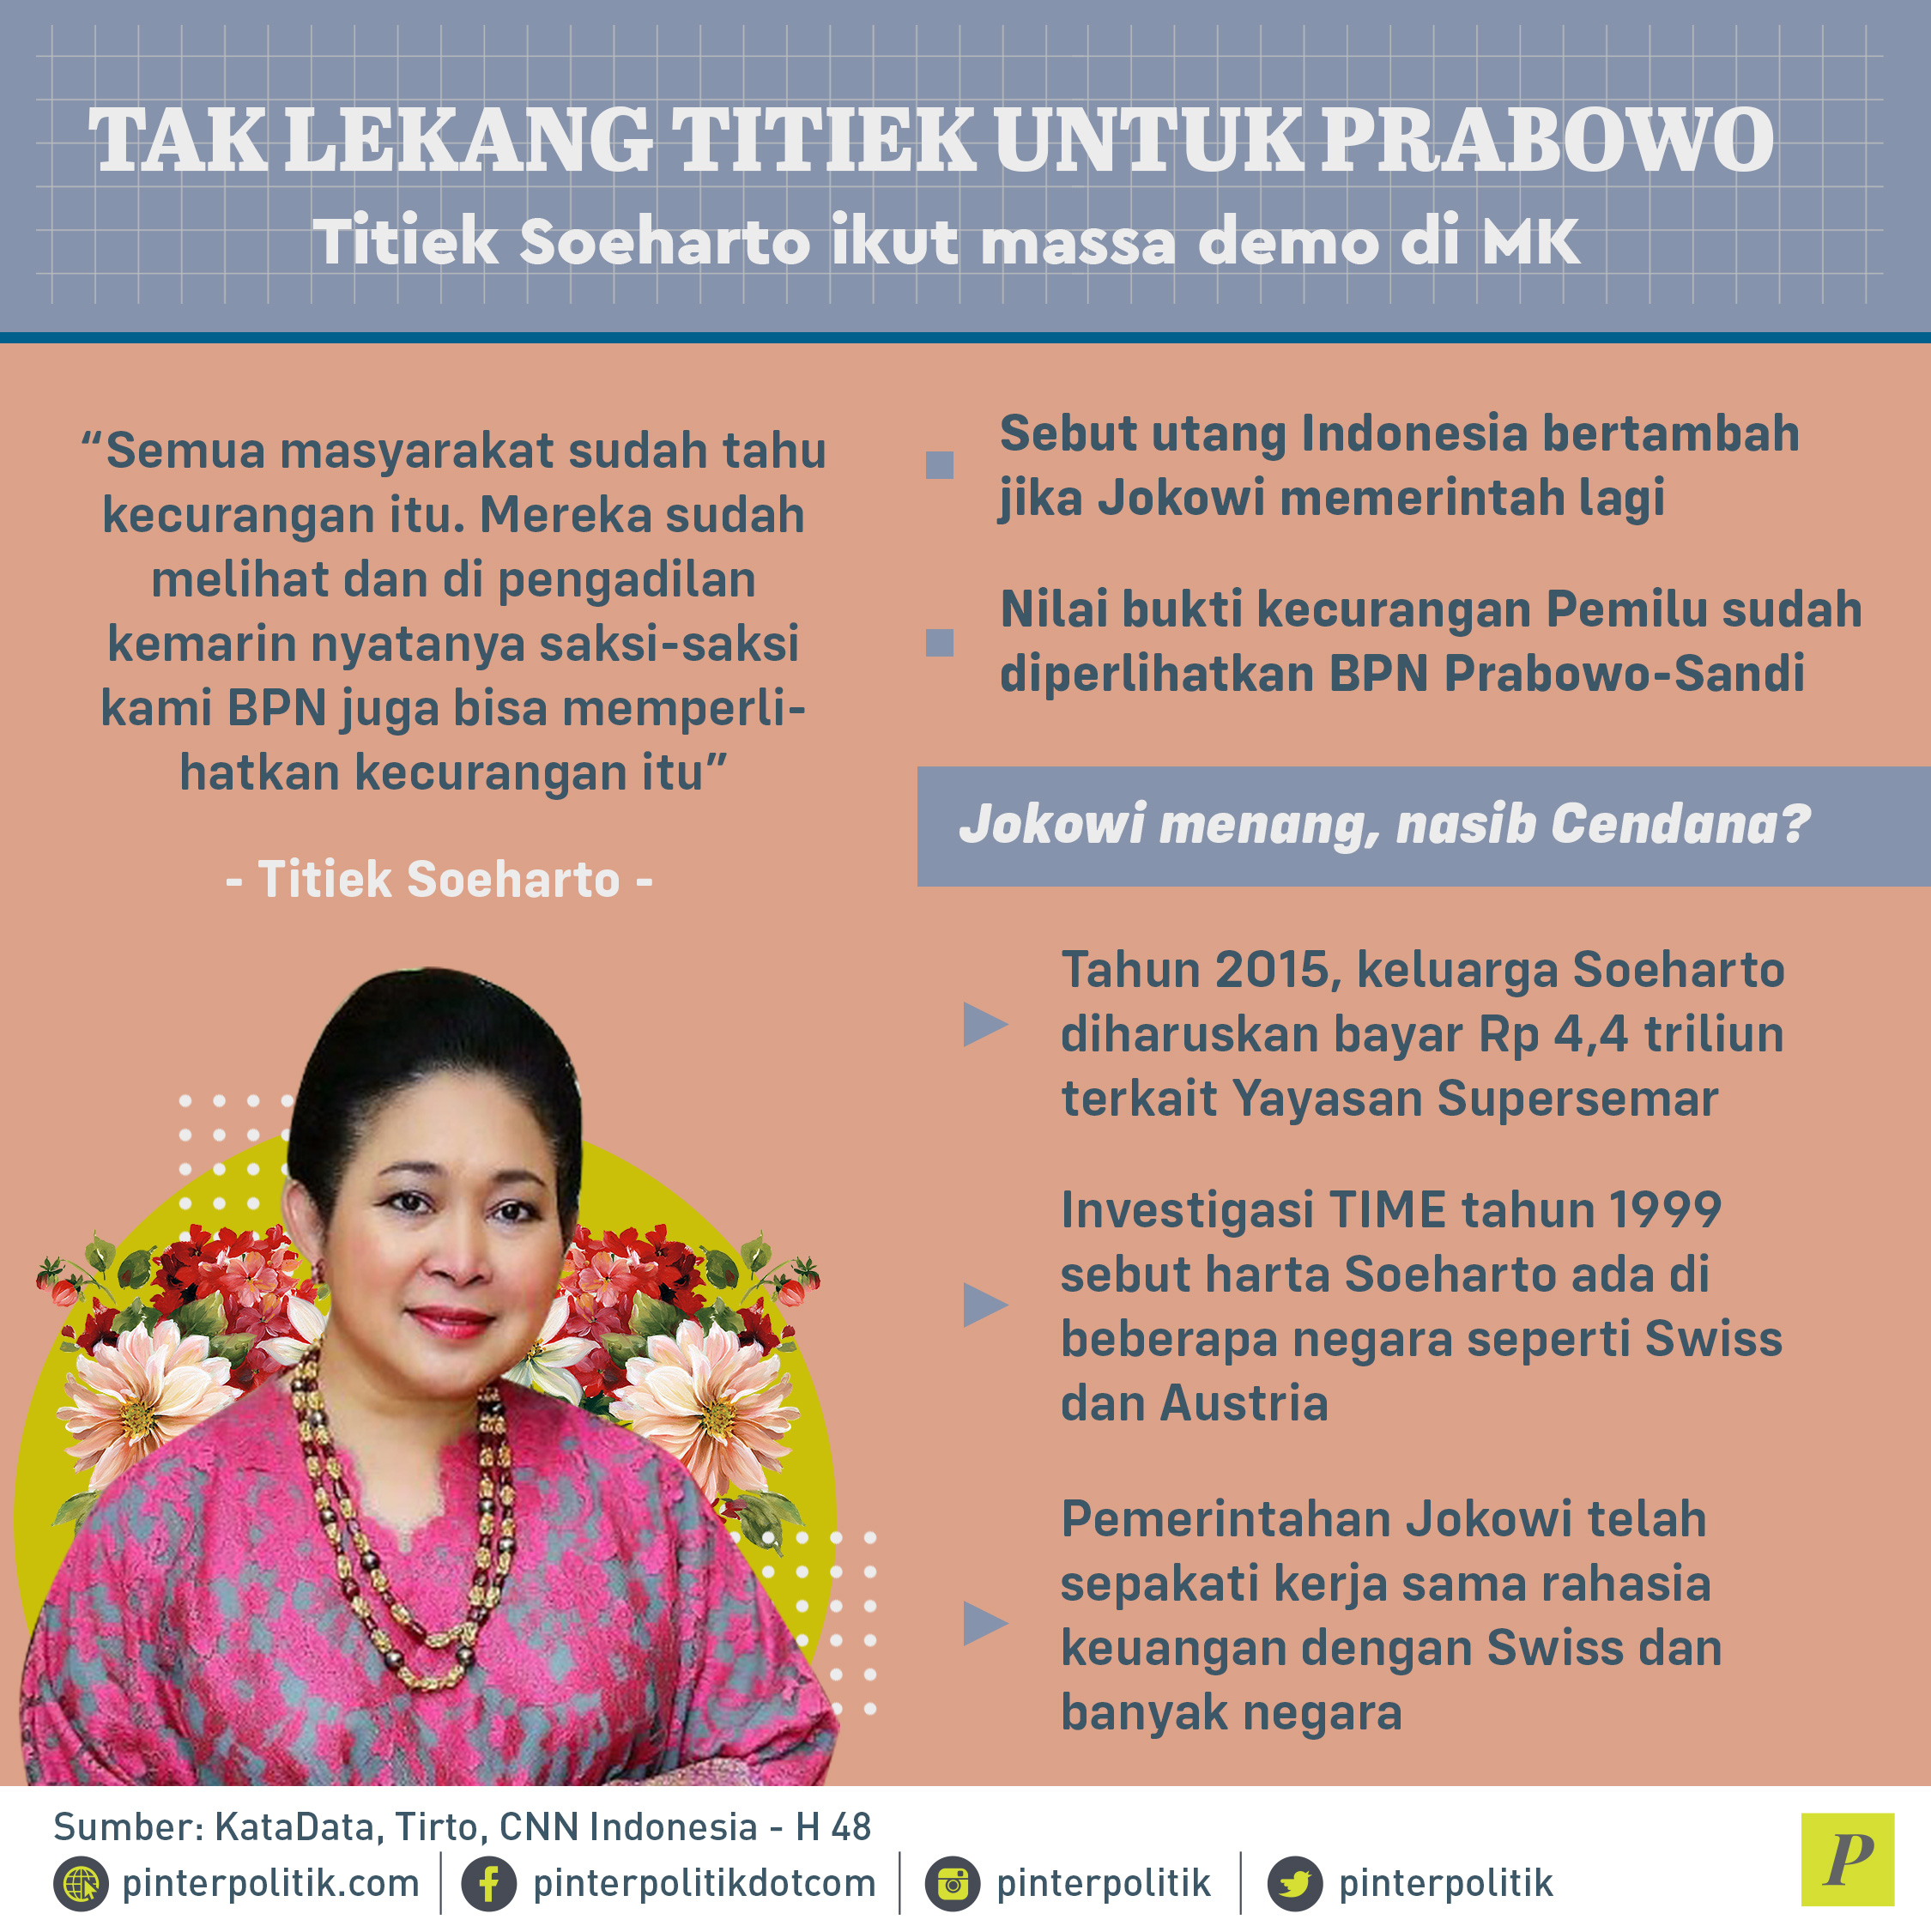 Titiek Soeharto sebut utang Indonesia bertambah jika Jokowi memerintah lagi